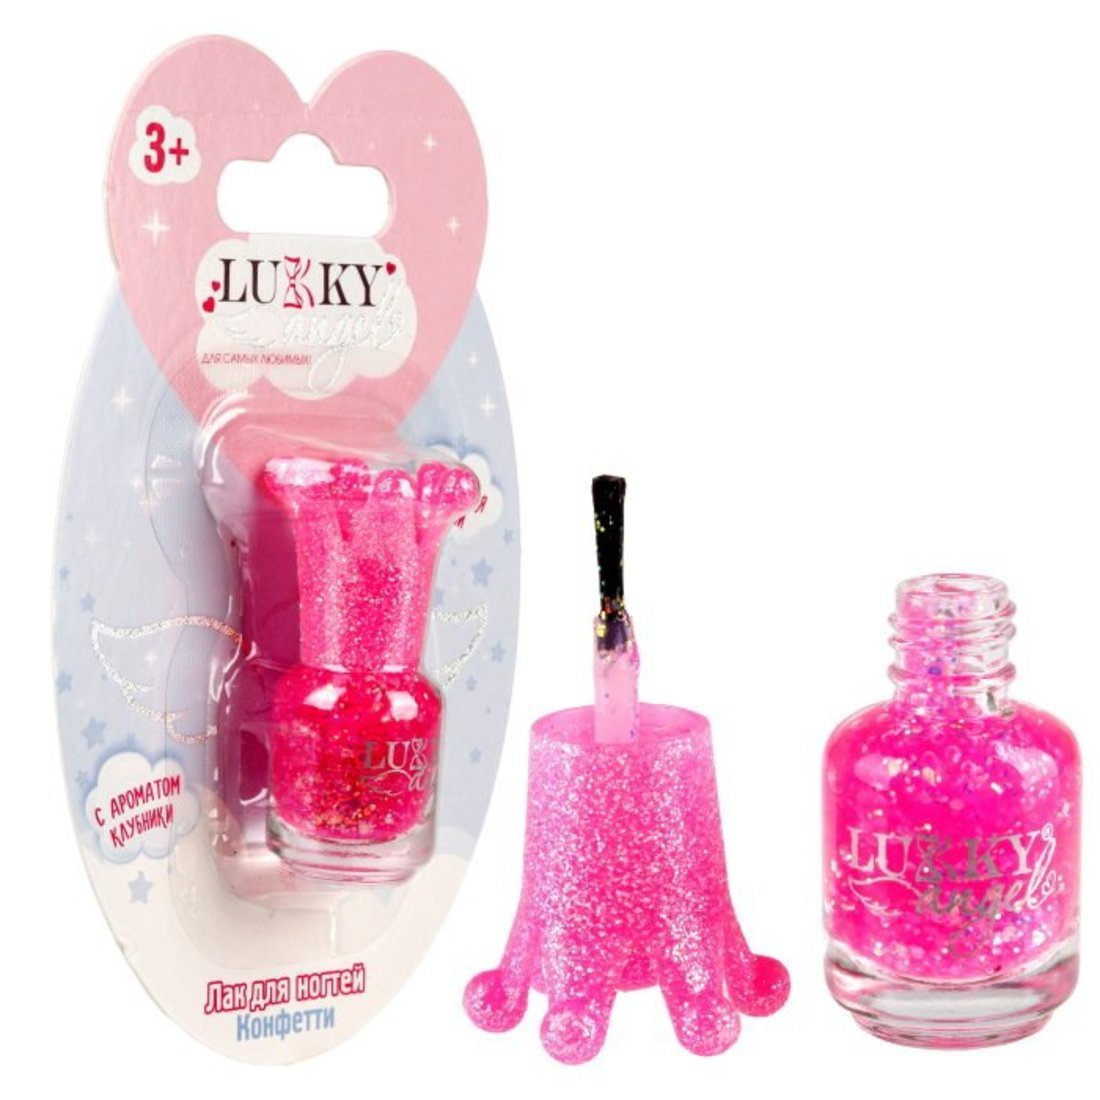 Лак для ногтей Конфетти, смываемый водой, ярко-розовый с ароматом клубники Lukky Т23503